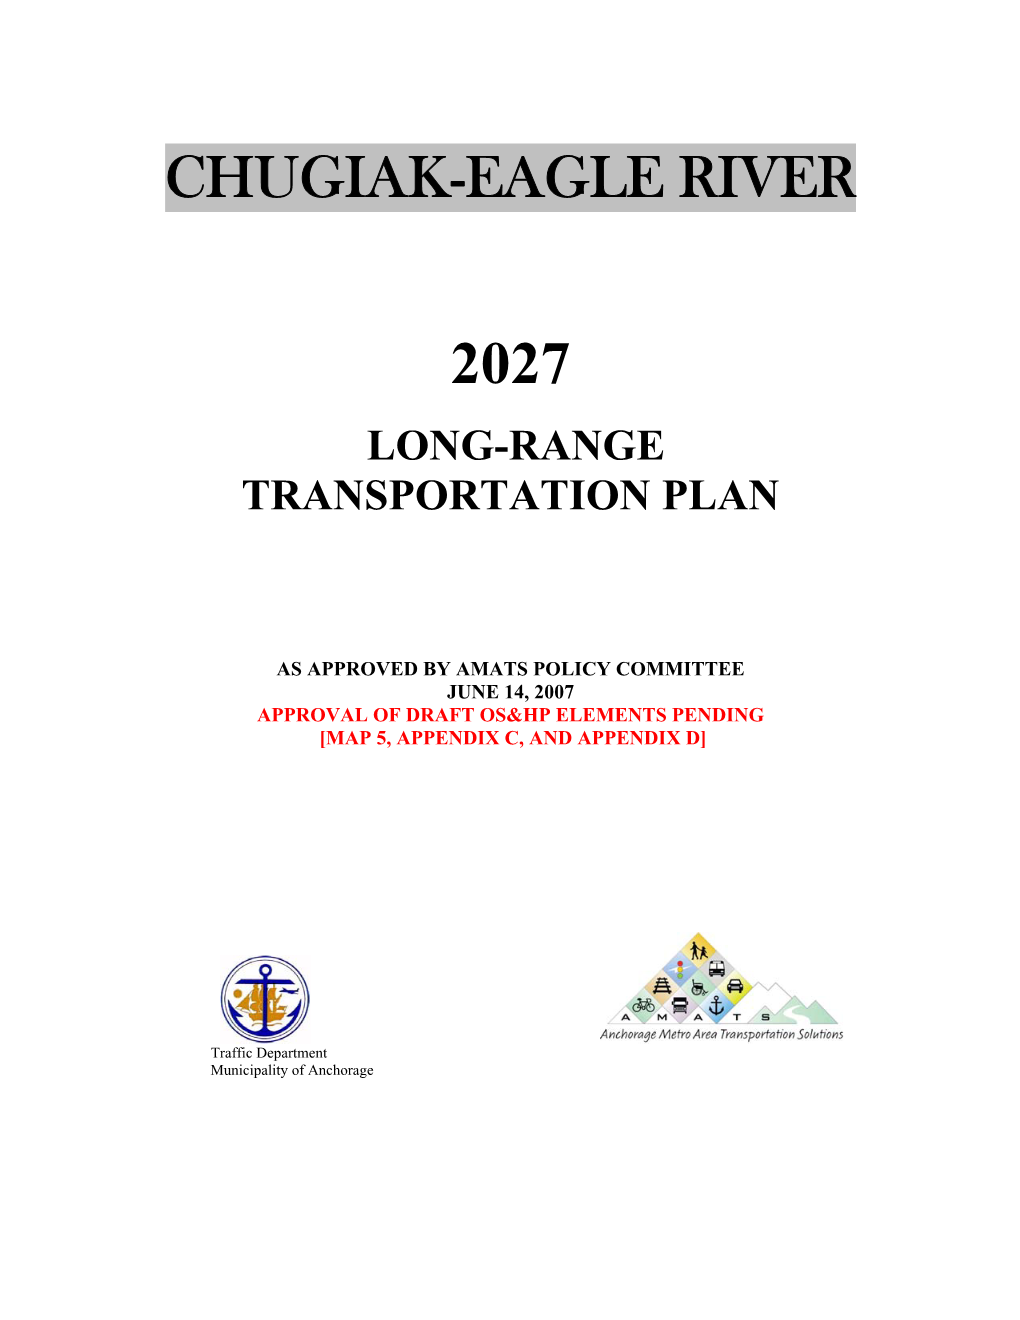 Chugiak-Eagle River 2027 Long-Range Transportation Plan